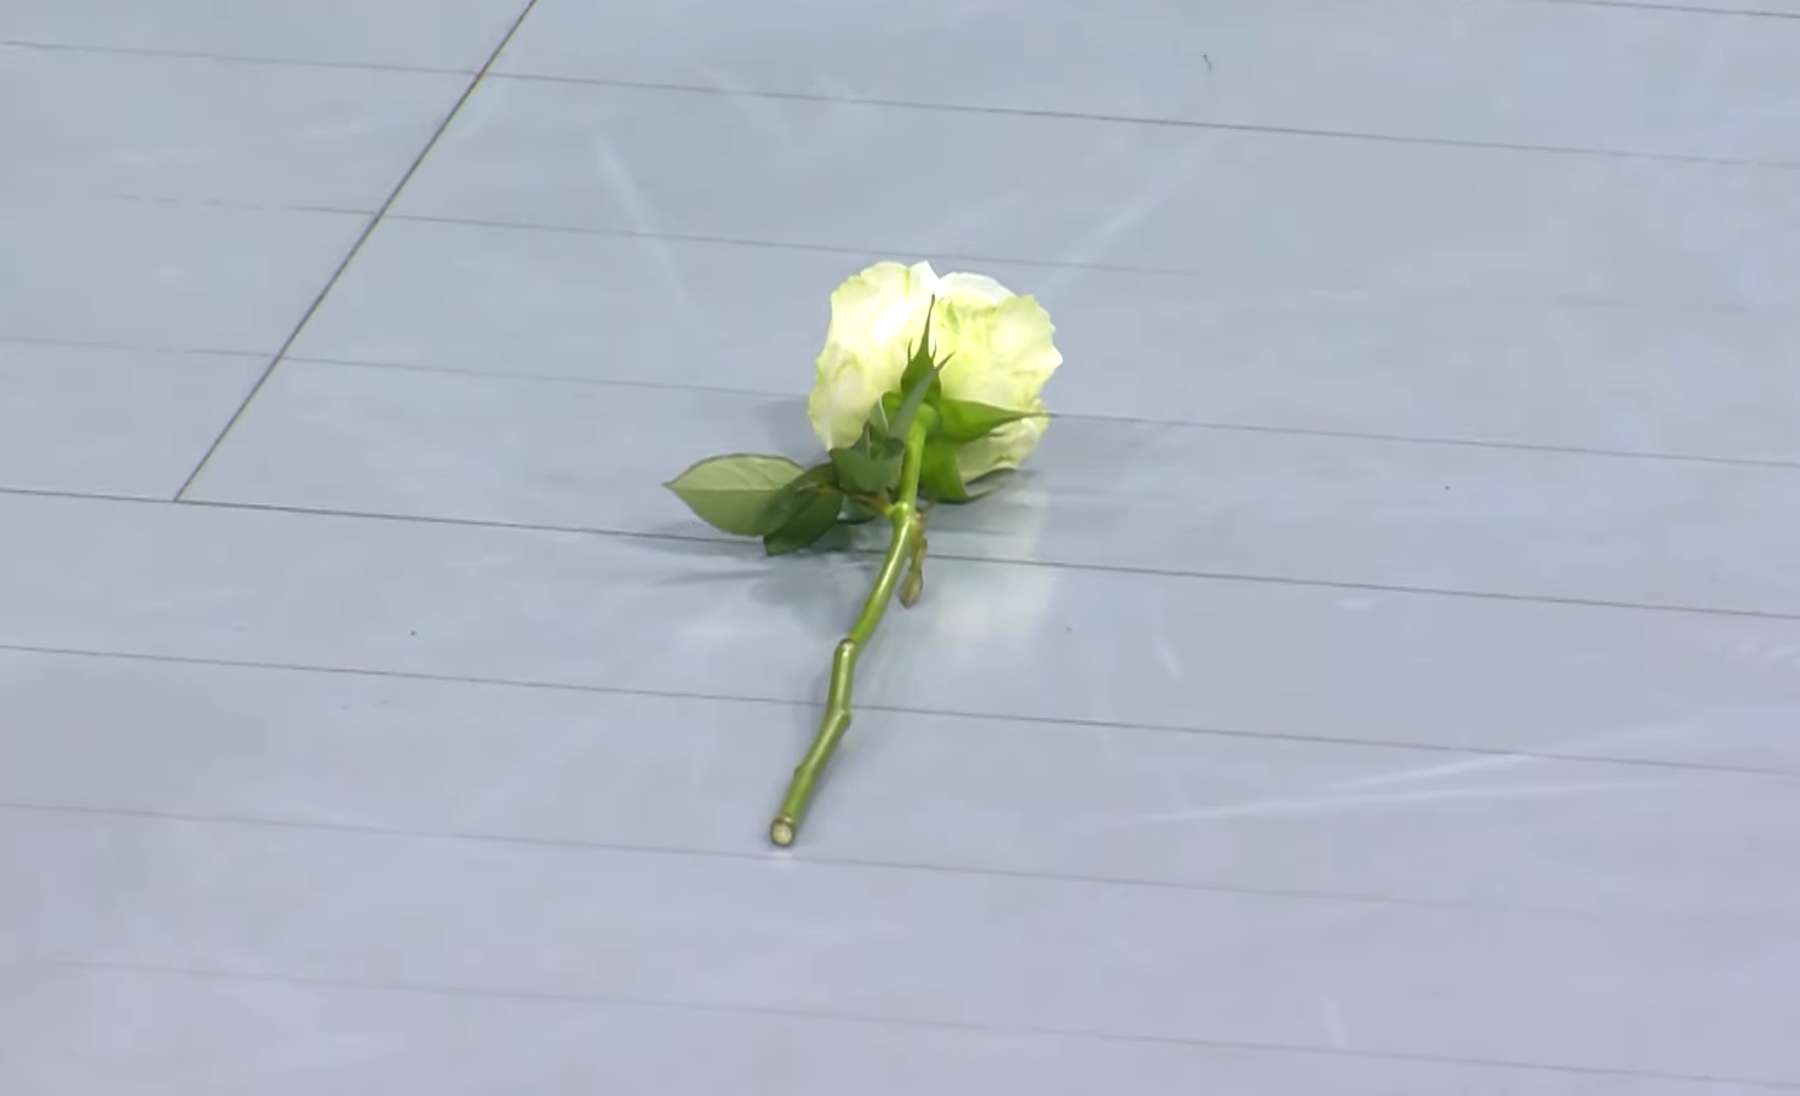 Fännid viskasid enne kohtumise algust väljakule lilli, et mälestada hirmsas tulistamises hukkunud ohvreid